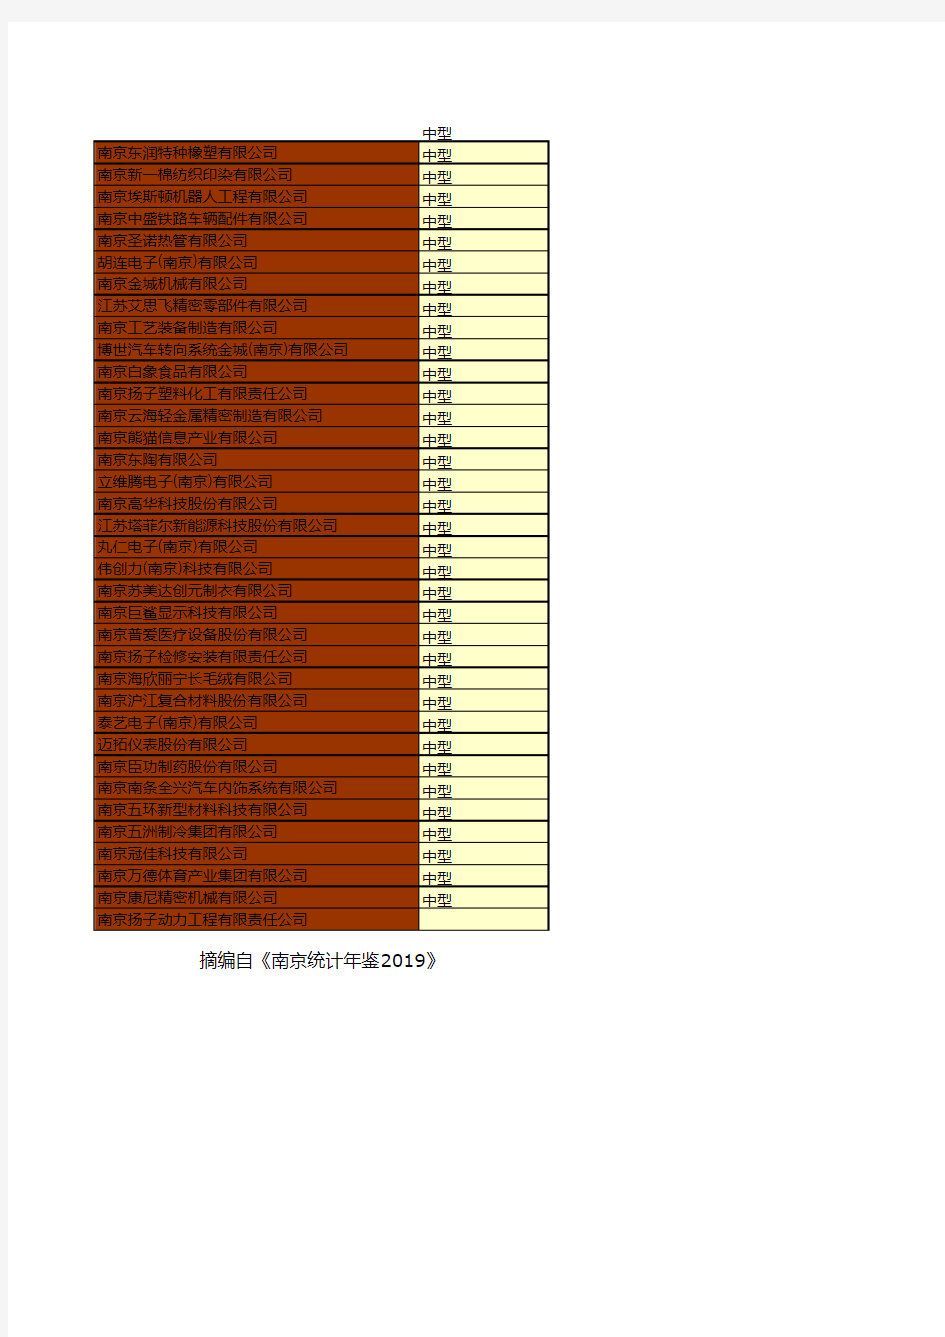 南京市社会经济发展统计年鉴指标数据：2018年大中型工业企业名单统计(五)